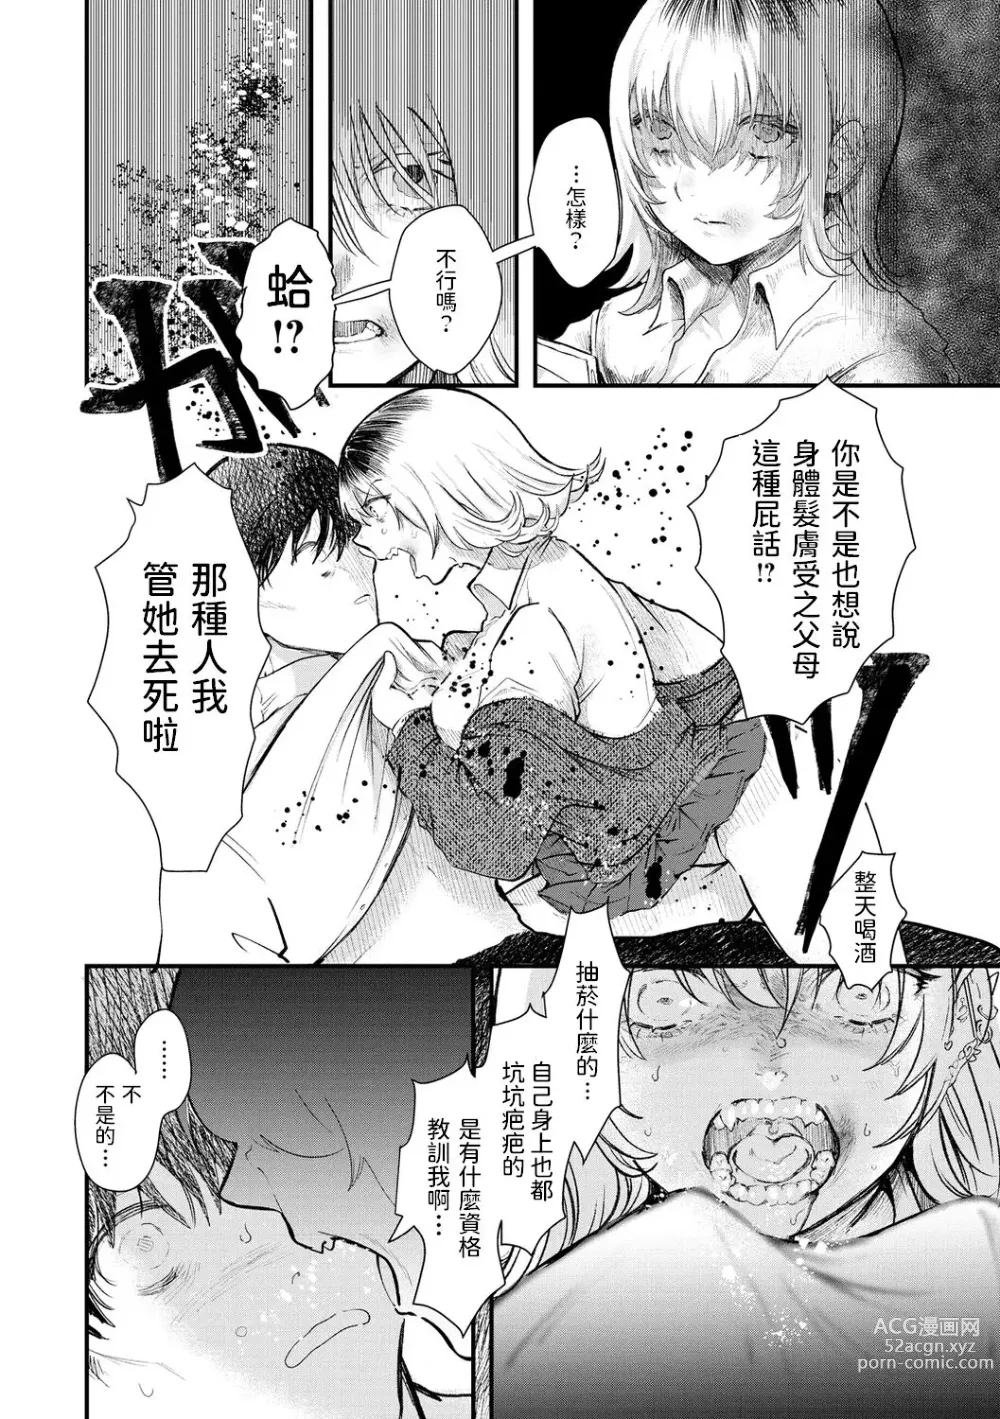 Page 4 of manga Pureless